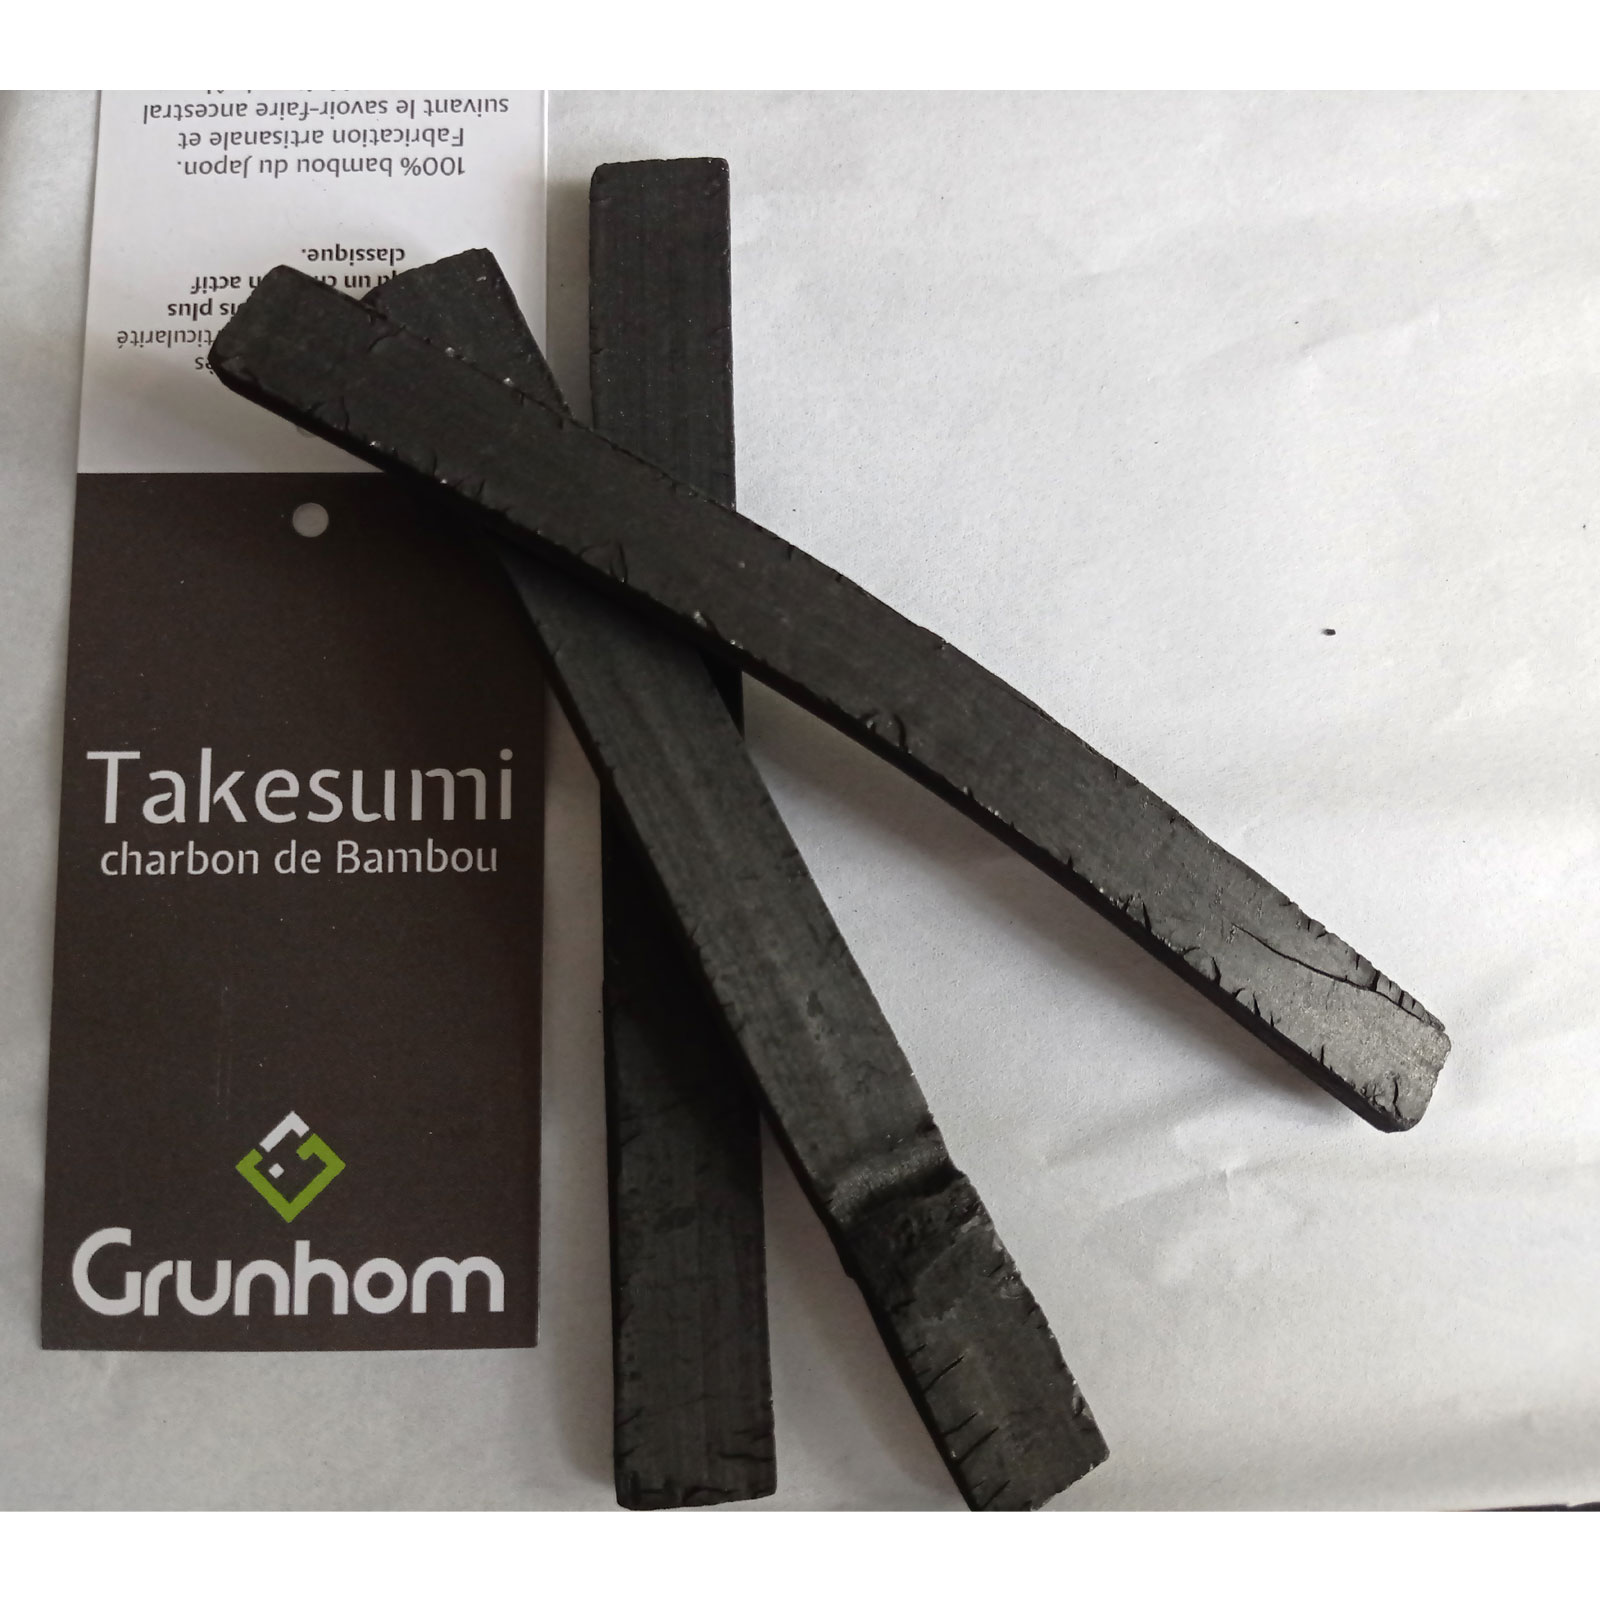 Charbon Takesumi de Bambou X3 - pour purifier l’Eau